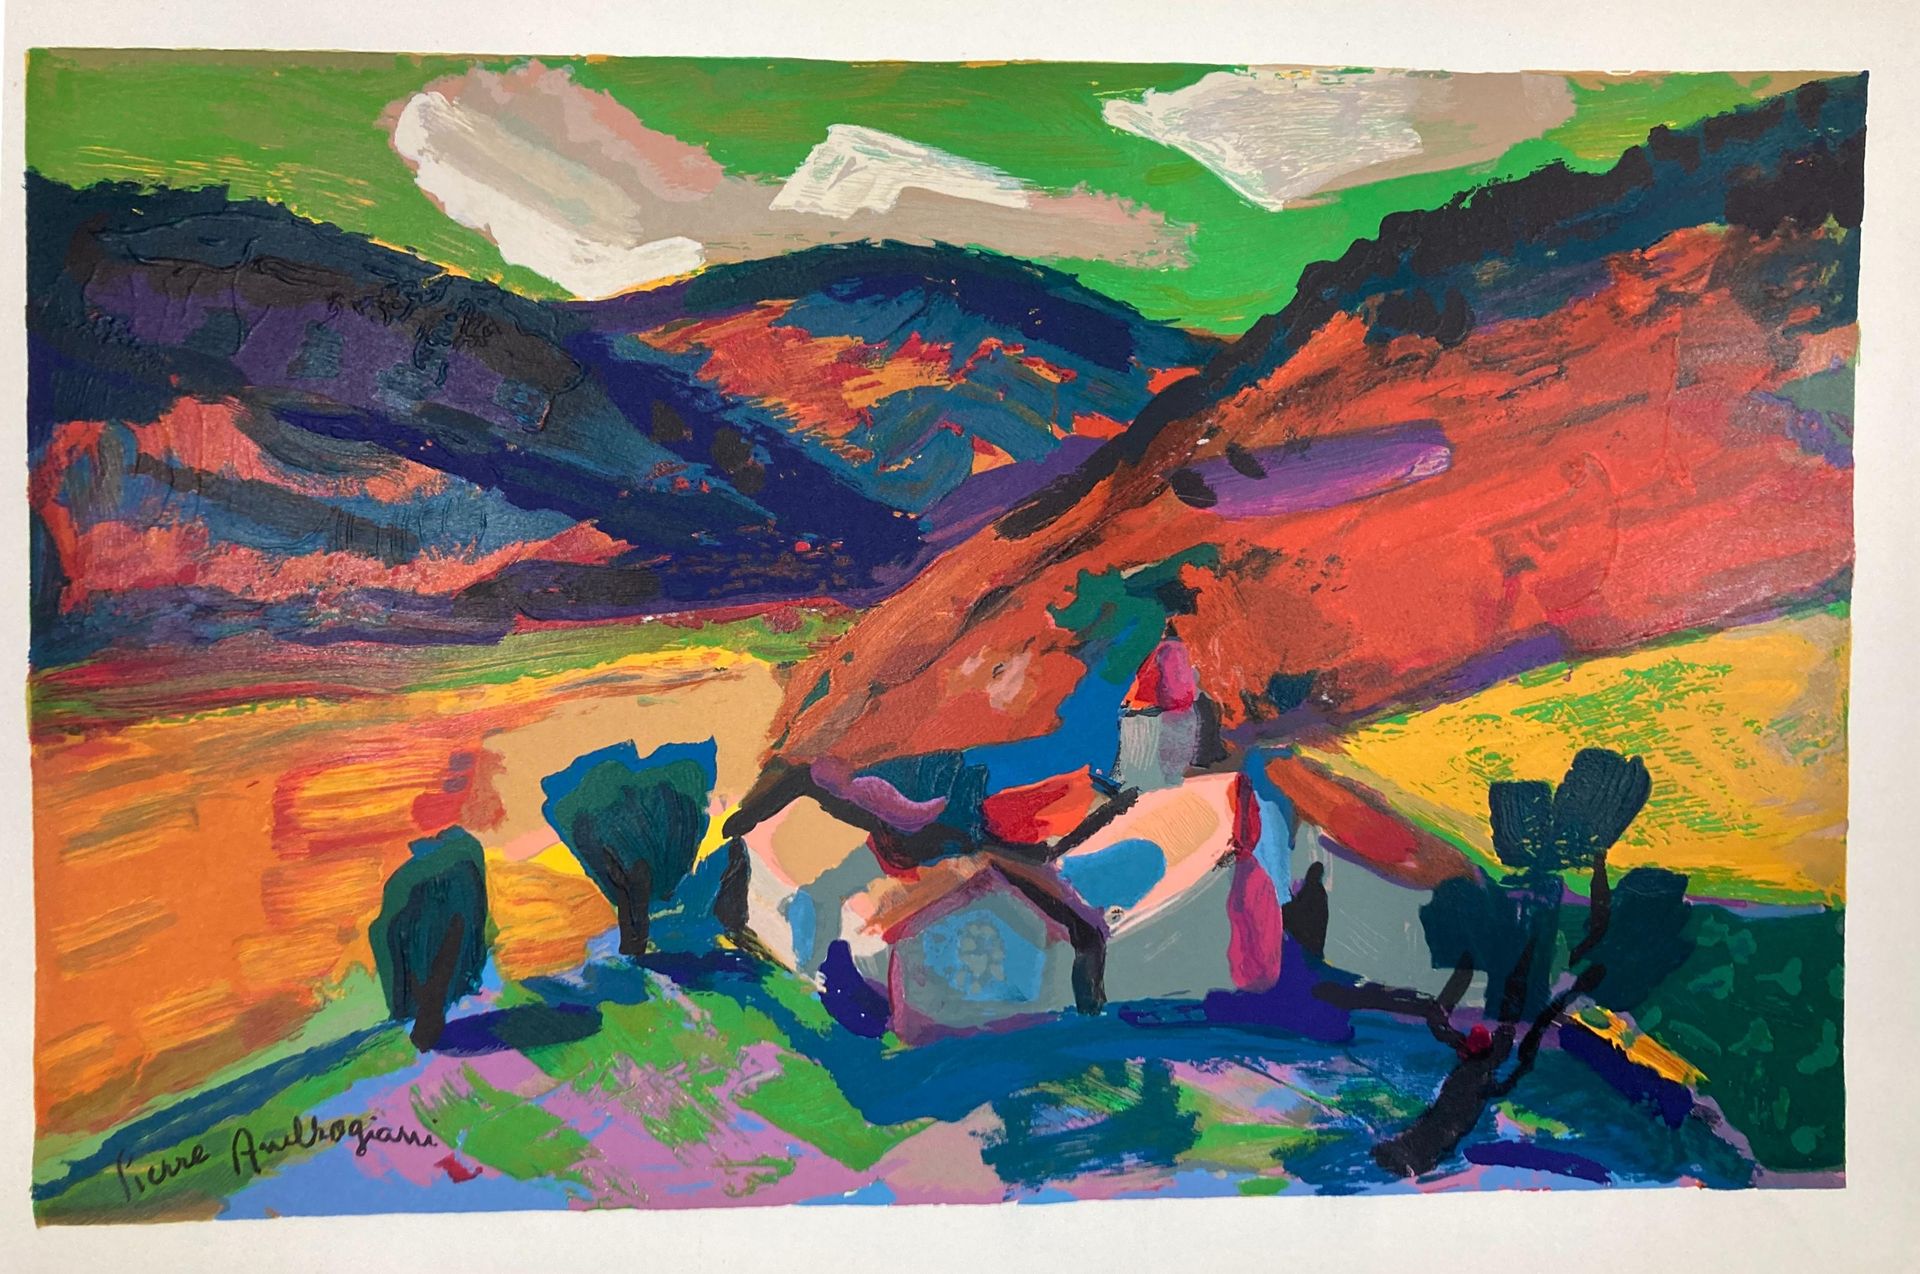 Null 皮埃尔-安布罗吉亚尼(1907-1985)
阿尔卑斯山
绘画作品。板块内有签名